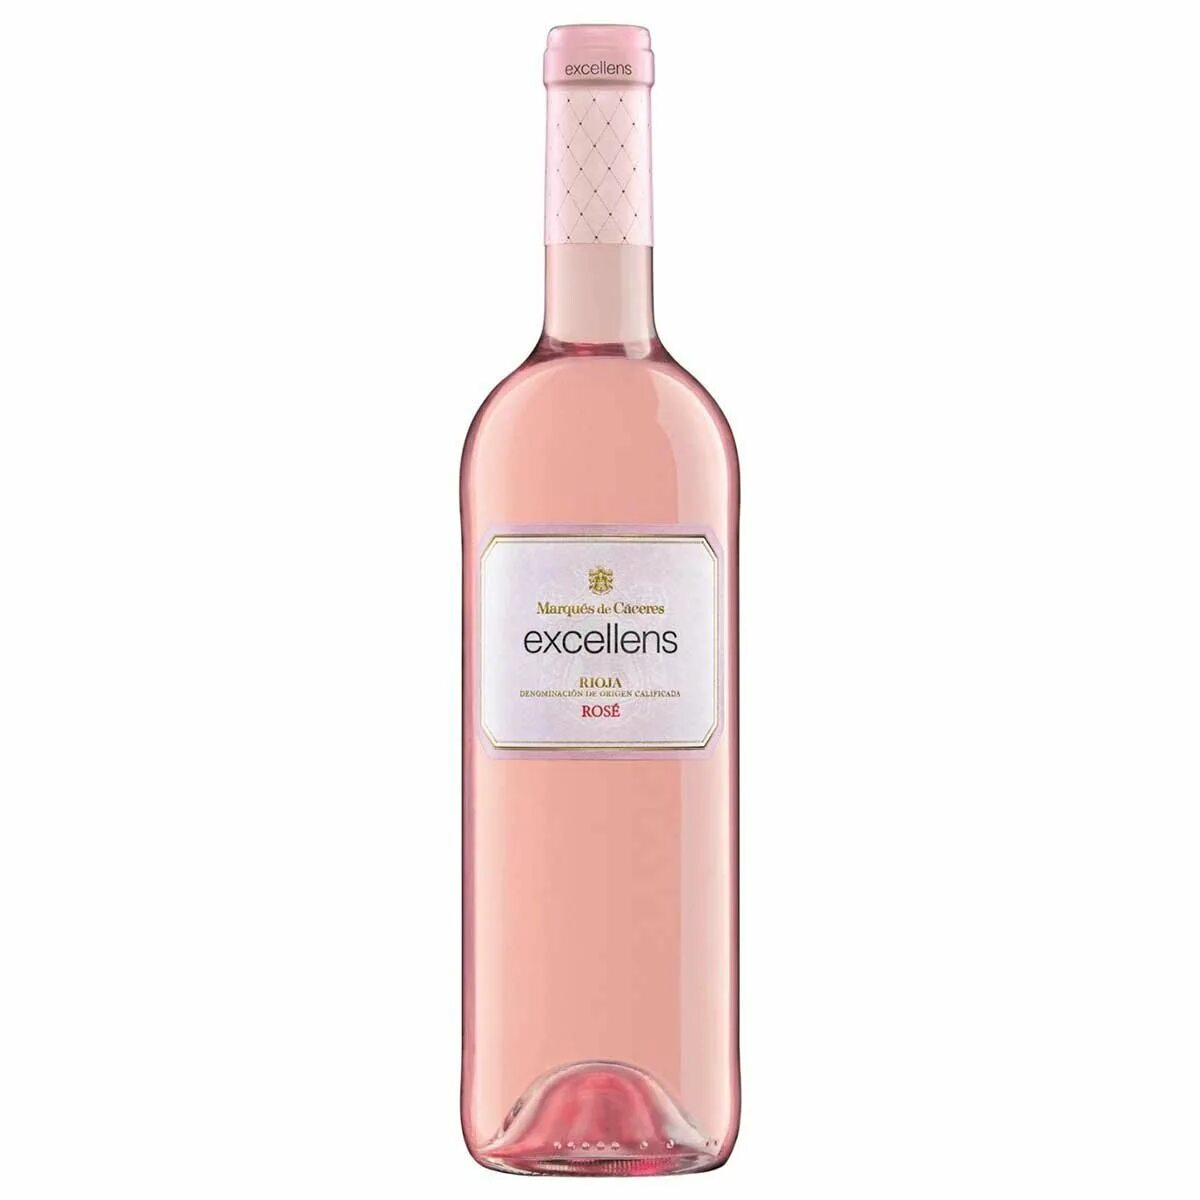 Розовое сухое вино купить. Маркес де Касерес вино розовое. Marques de Caceres 2018 вино. Вино marques de Caceres, excellens Rose, Rioja doc, 2017, 0.75 л. Маркес де Касерес Росадо вино розовое 2017.